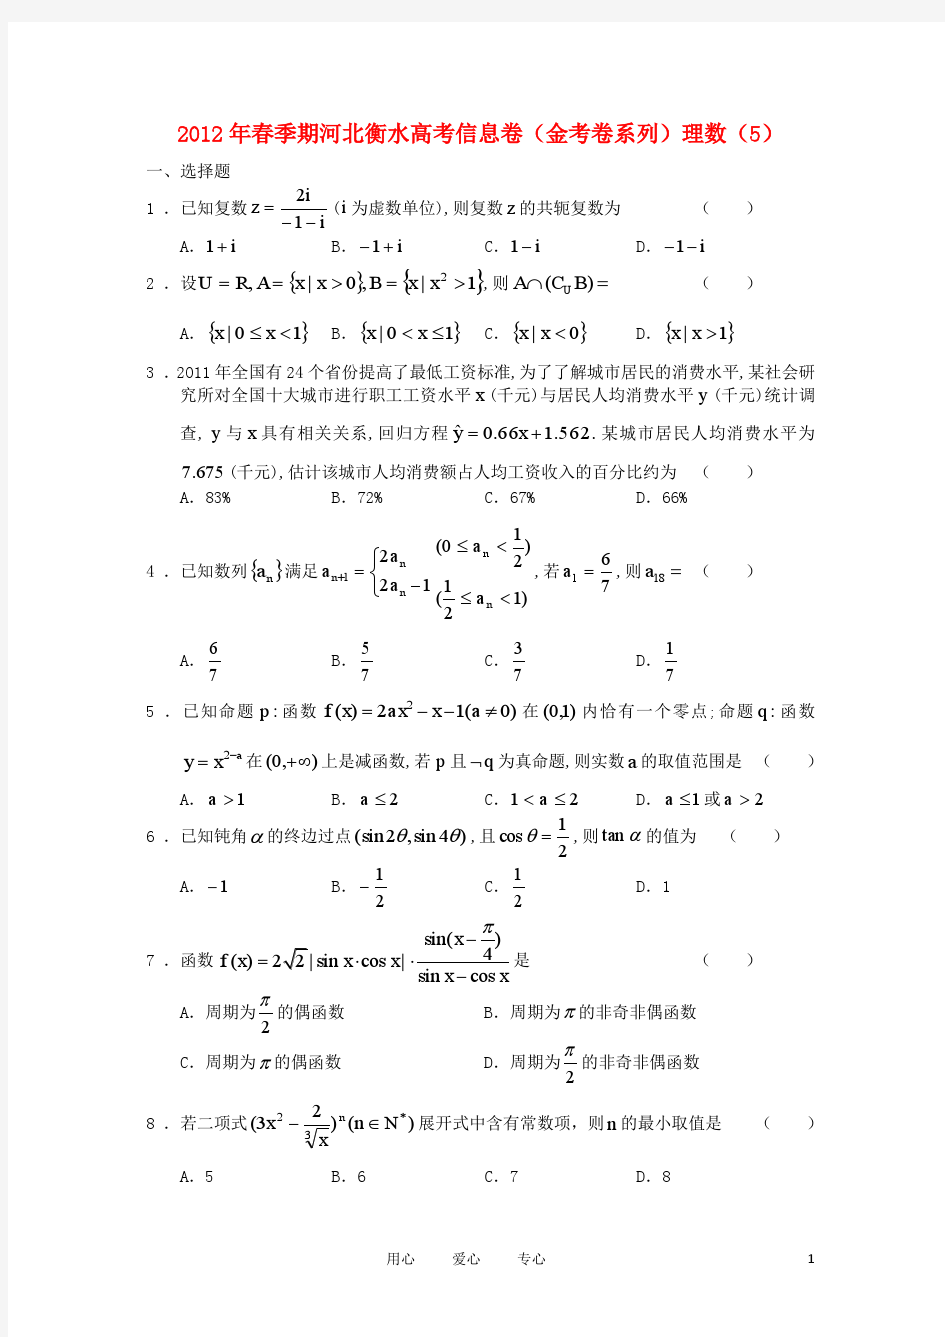 河北省衡水市2012年高考数学信息卷(金考卷系列)(5) 理